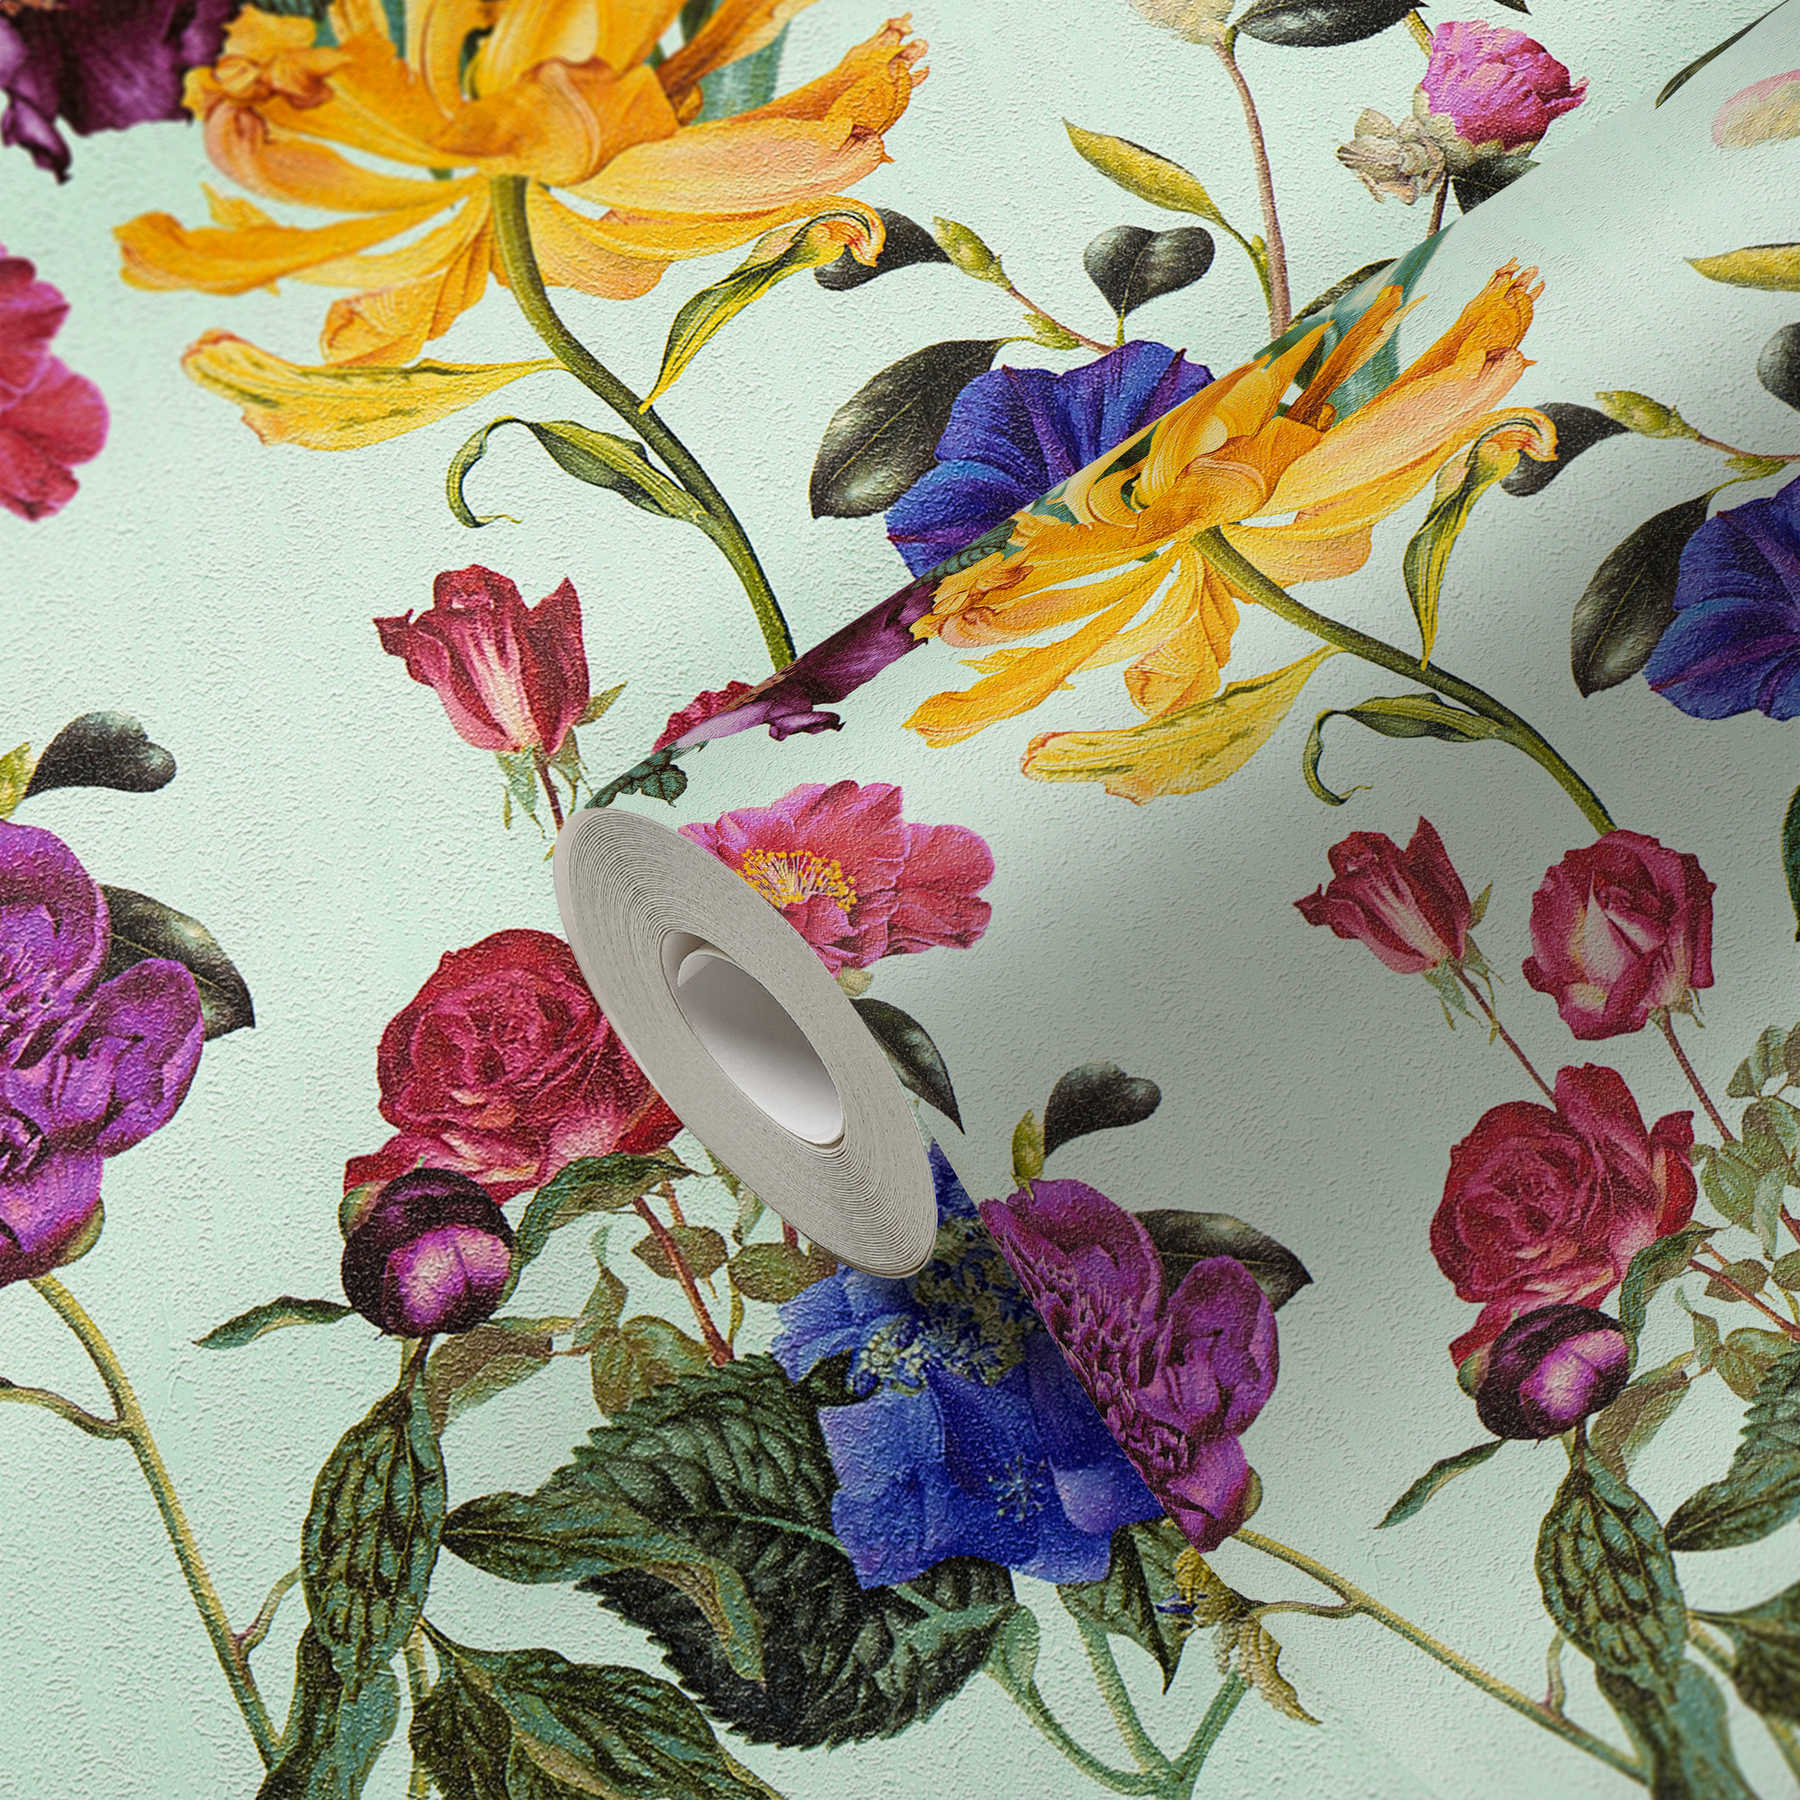             Papel pintado Blossom con flores en colores vivos - azul, verde, rojo
        